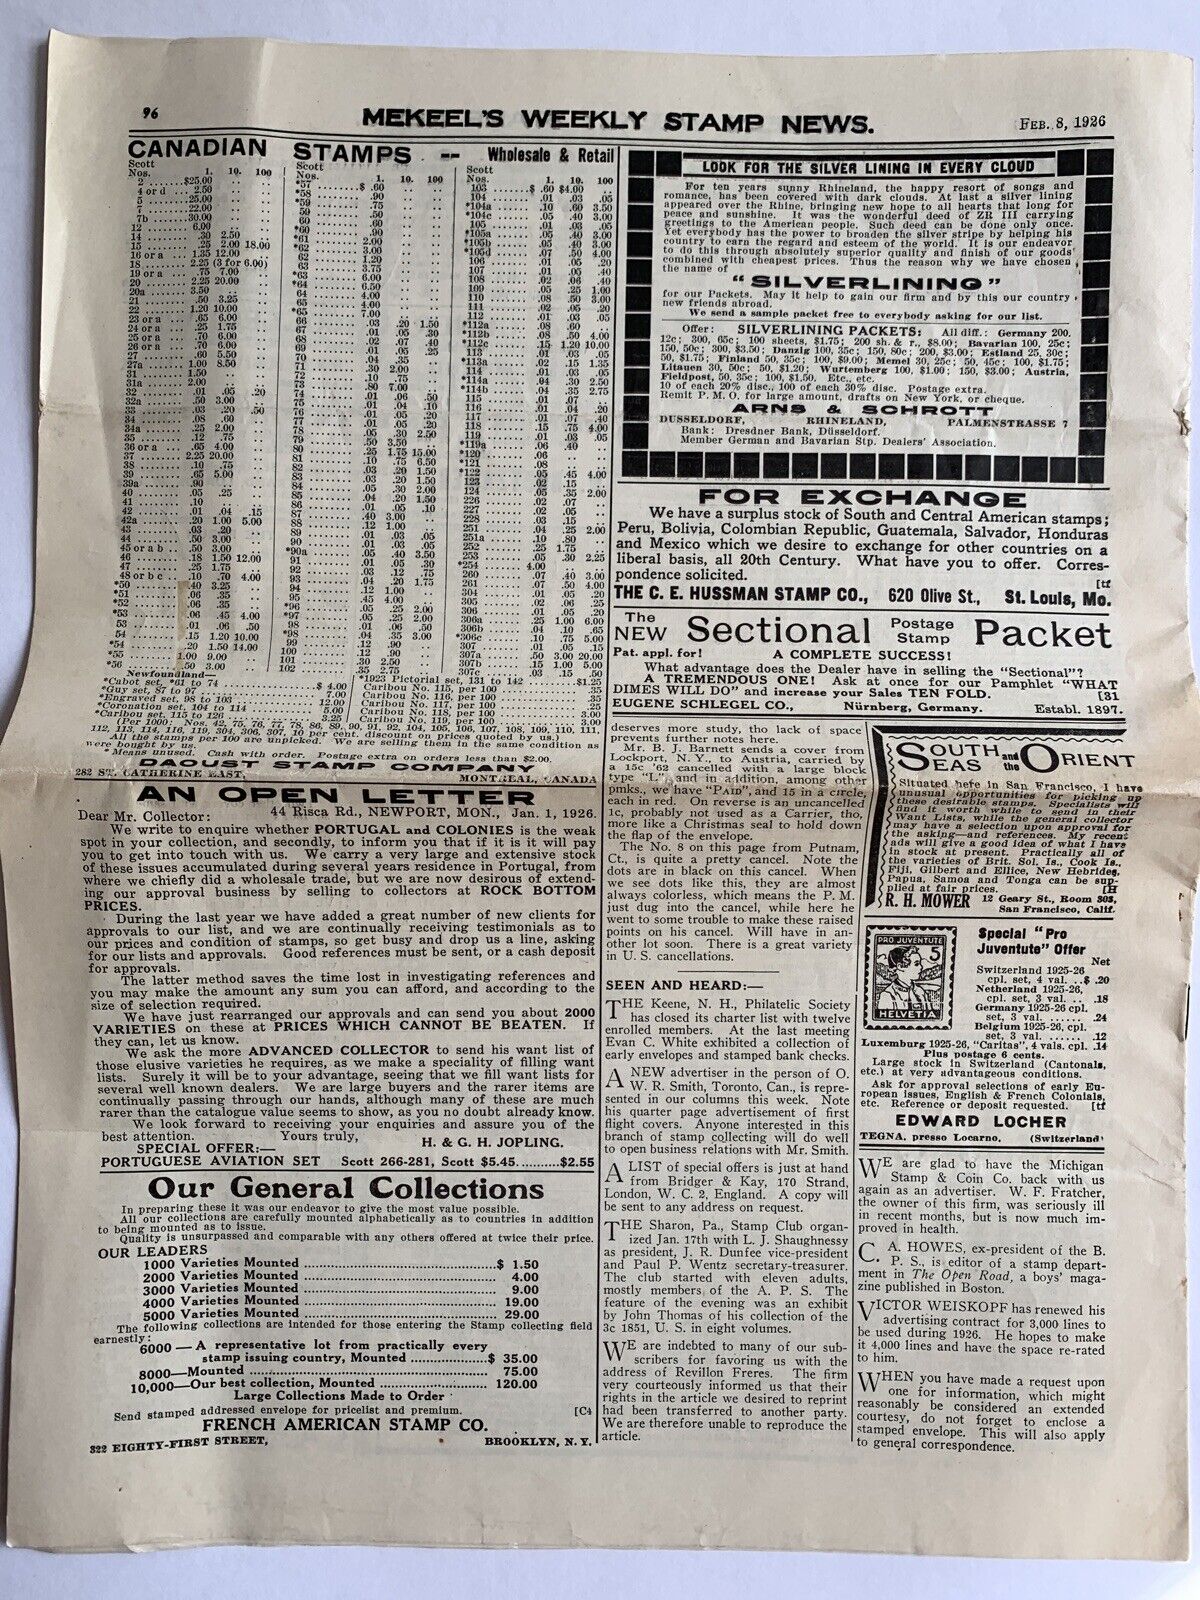 Vintage Philatetic News, 2 Mekeel's Weekly Stamp News April 12 1919 & Feb 8 1926 Mekeel's - фотография #7